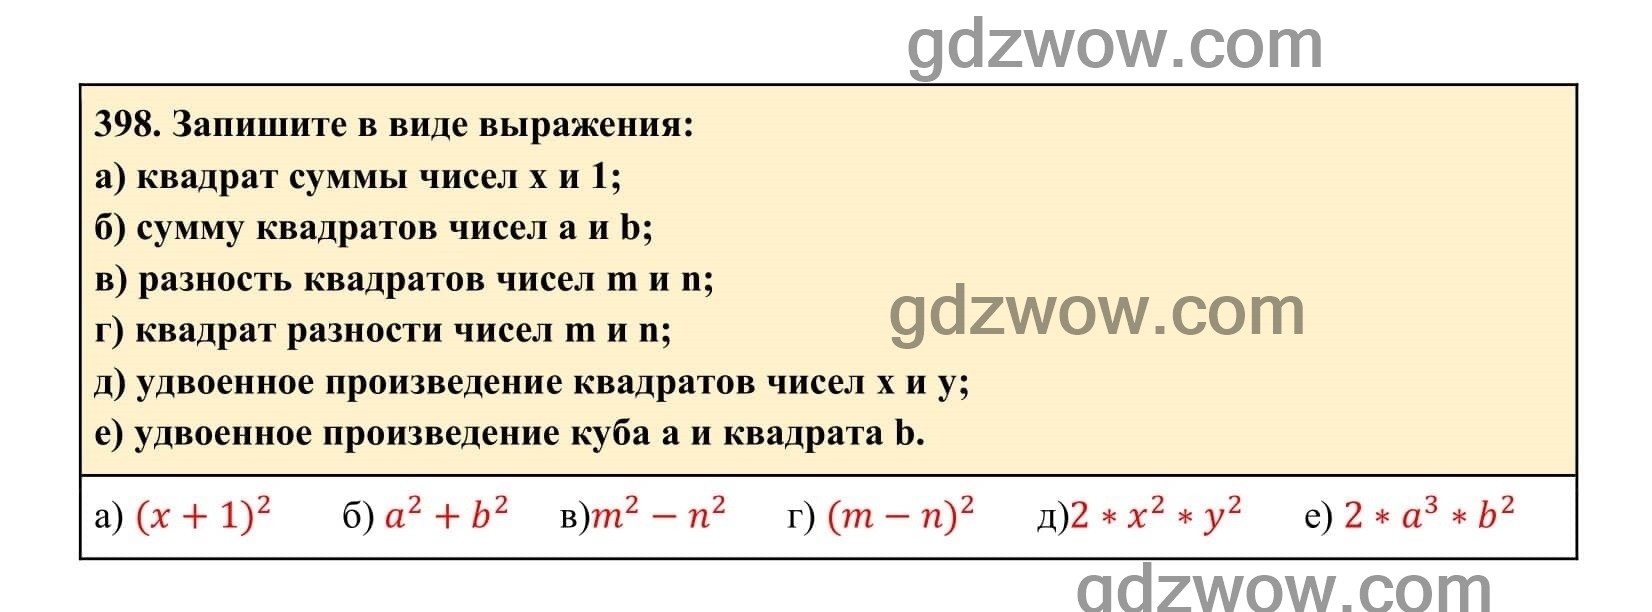 Упражнение 398 - ГДЗ по Алгебре 7 класс Учебник Макарычев (решебник) - GDZwow